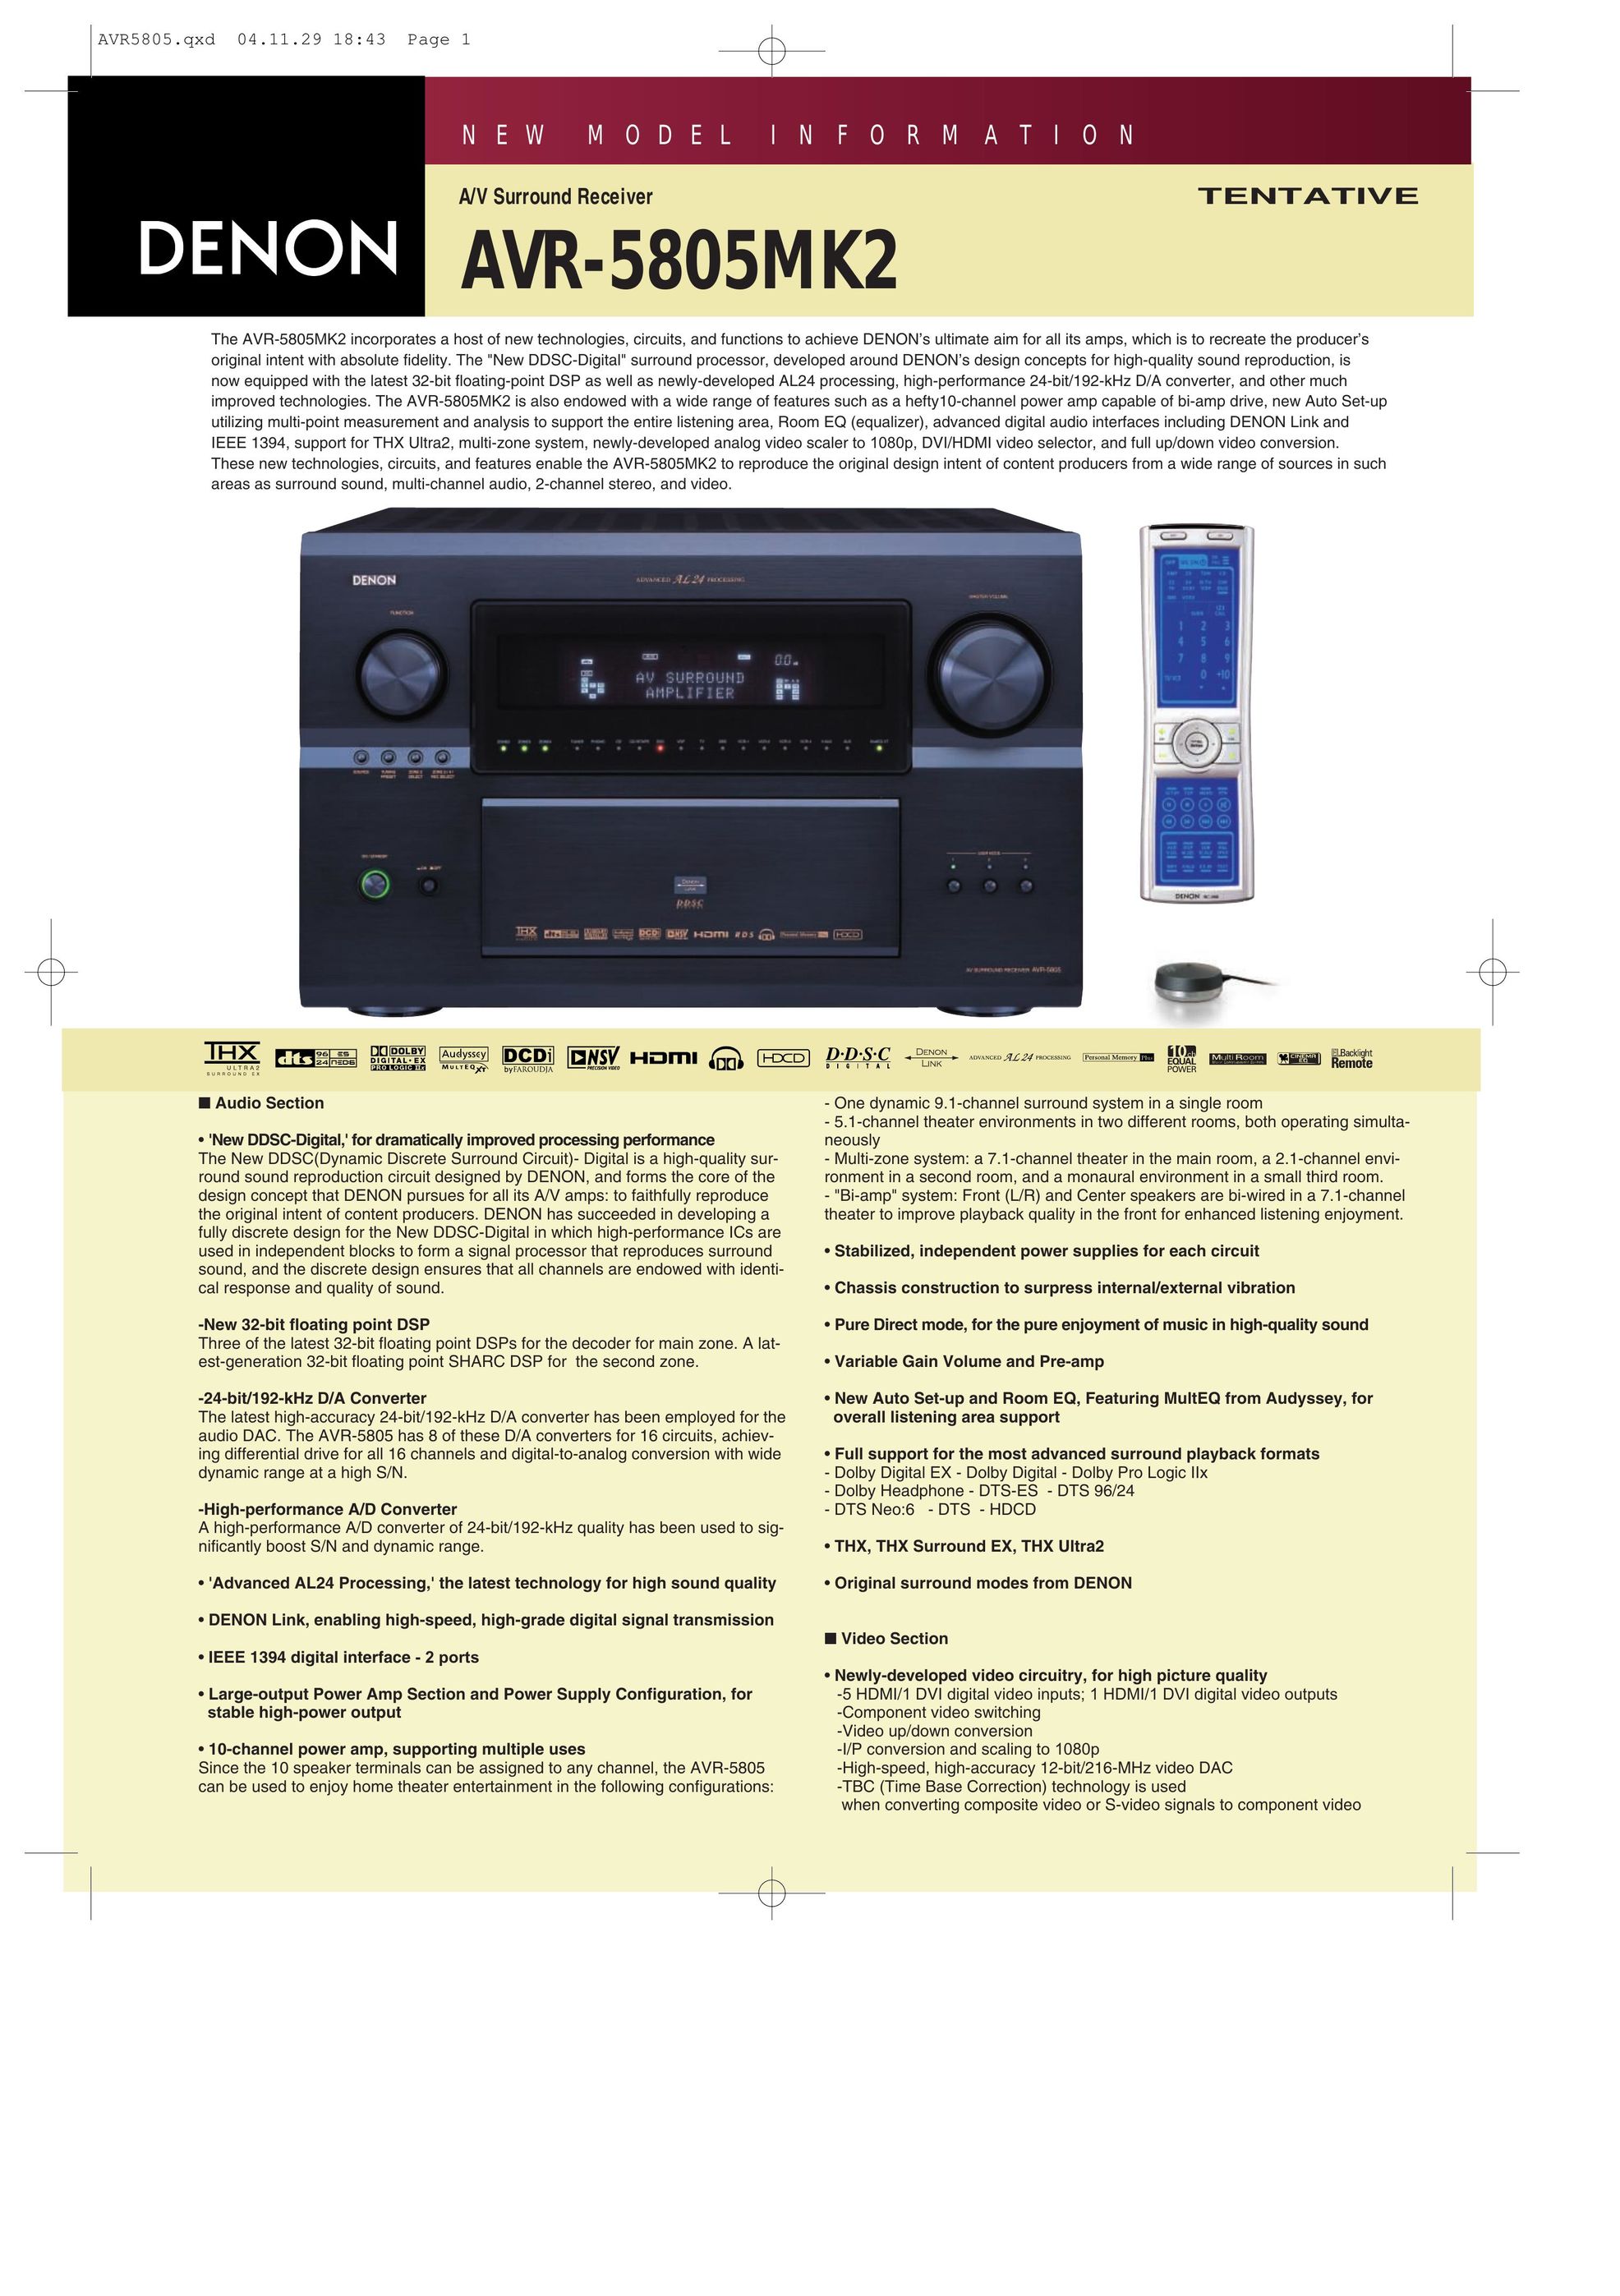 Denon 5805MK2 Stereo System User Manual